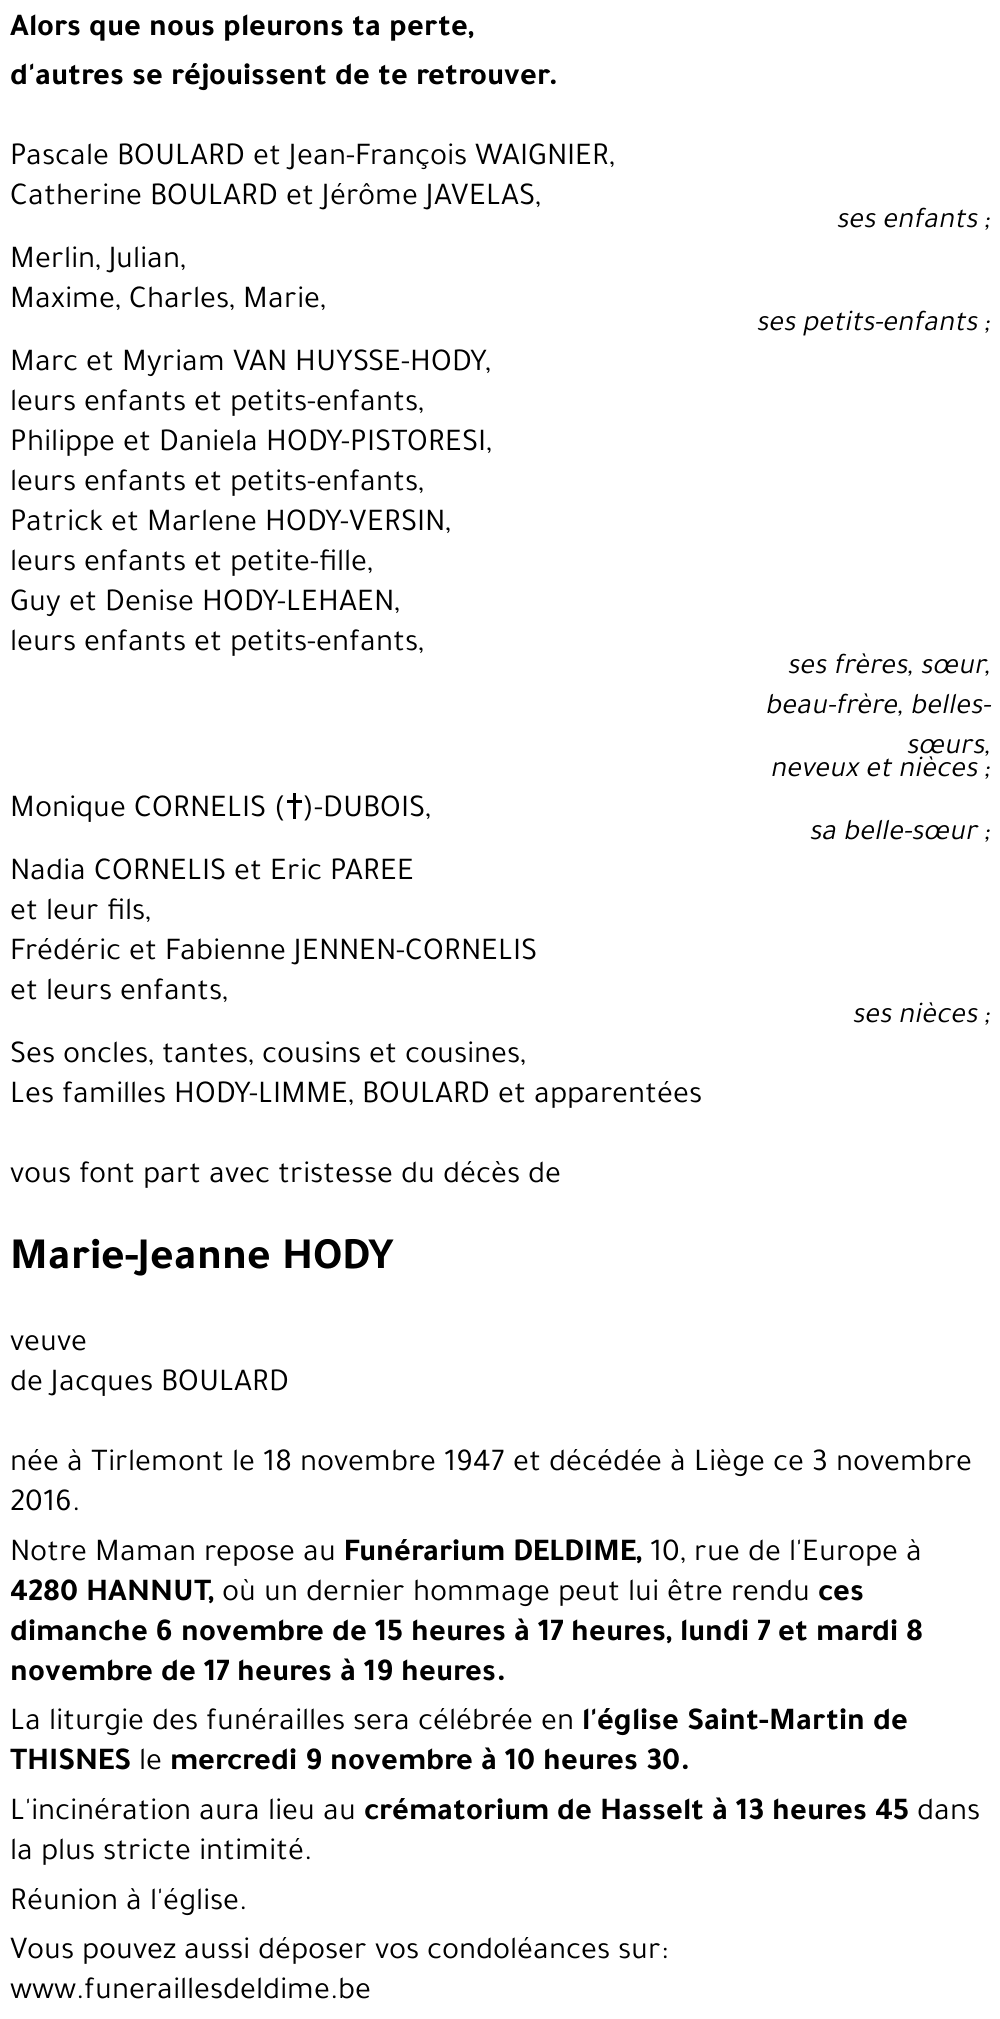 Marie-Jeanne HODY